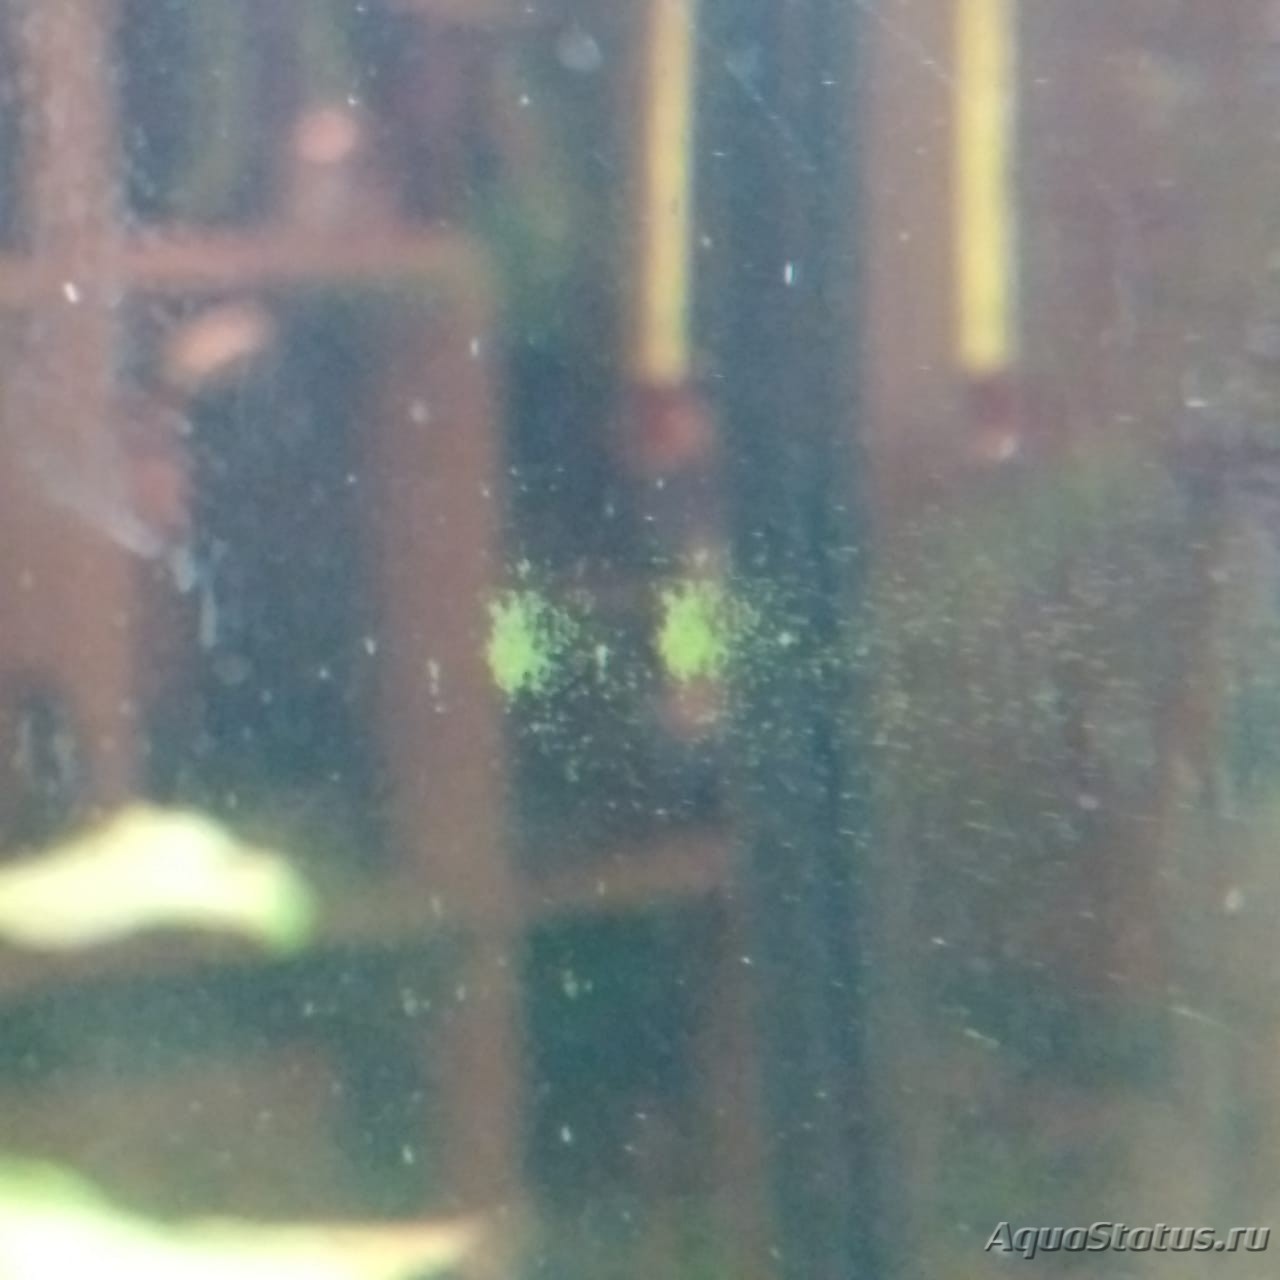 Почему на стенках аквариума. Зеленые точки на стенках аквариума. Зелёные точки на стекле аквариума. Зелень на стекле аквариума. Аквариум зелёный налёт на стекле.